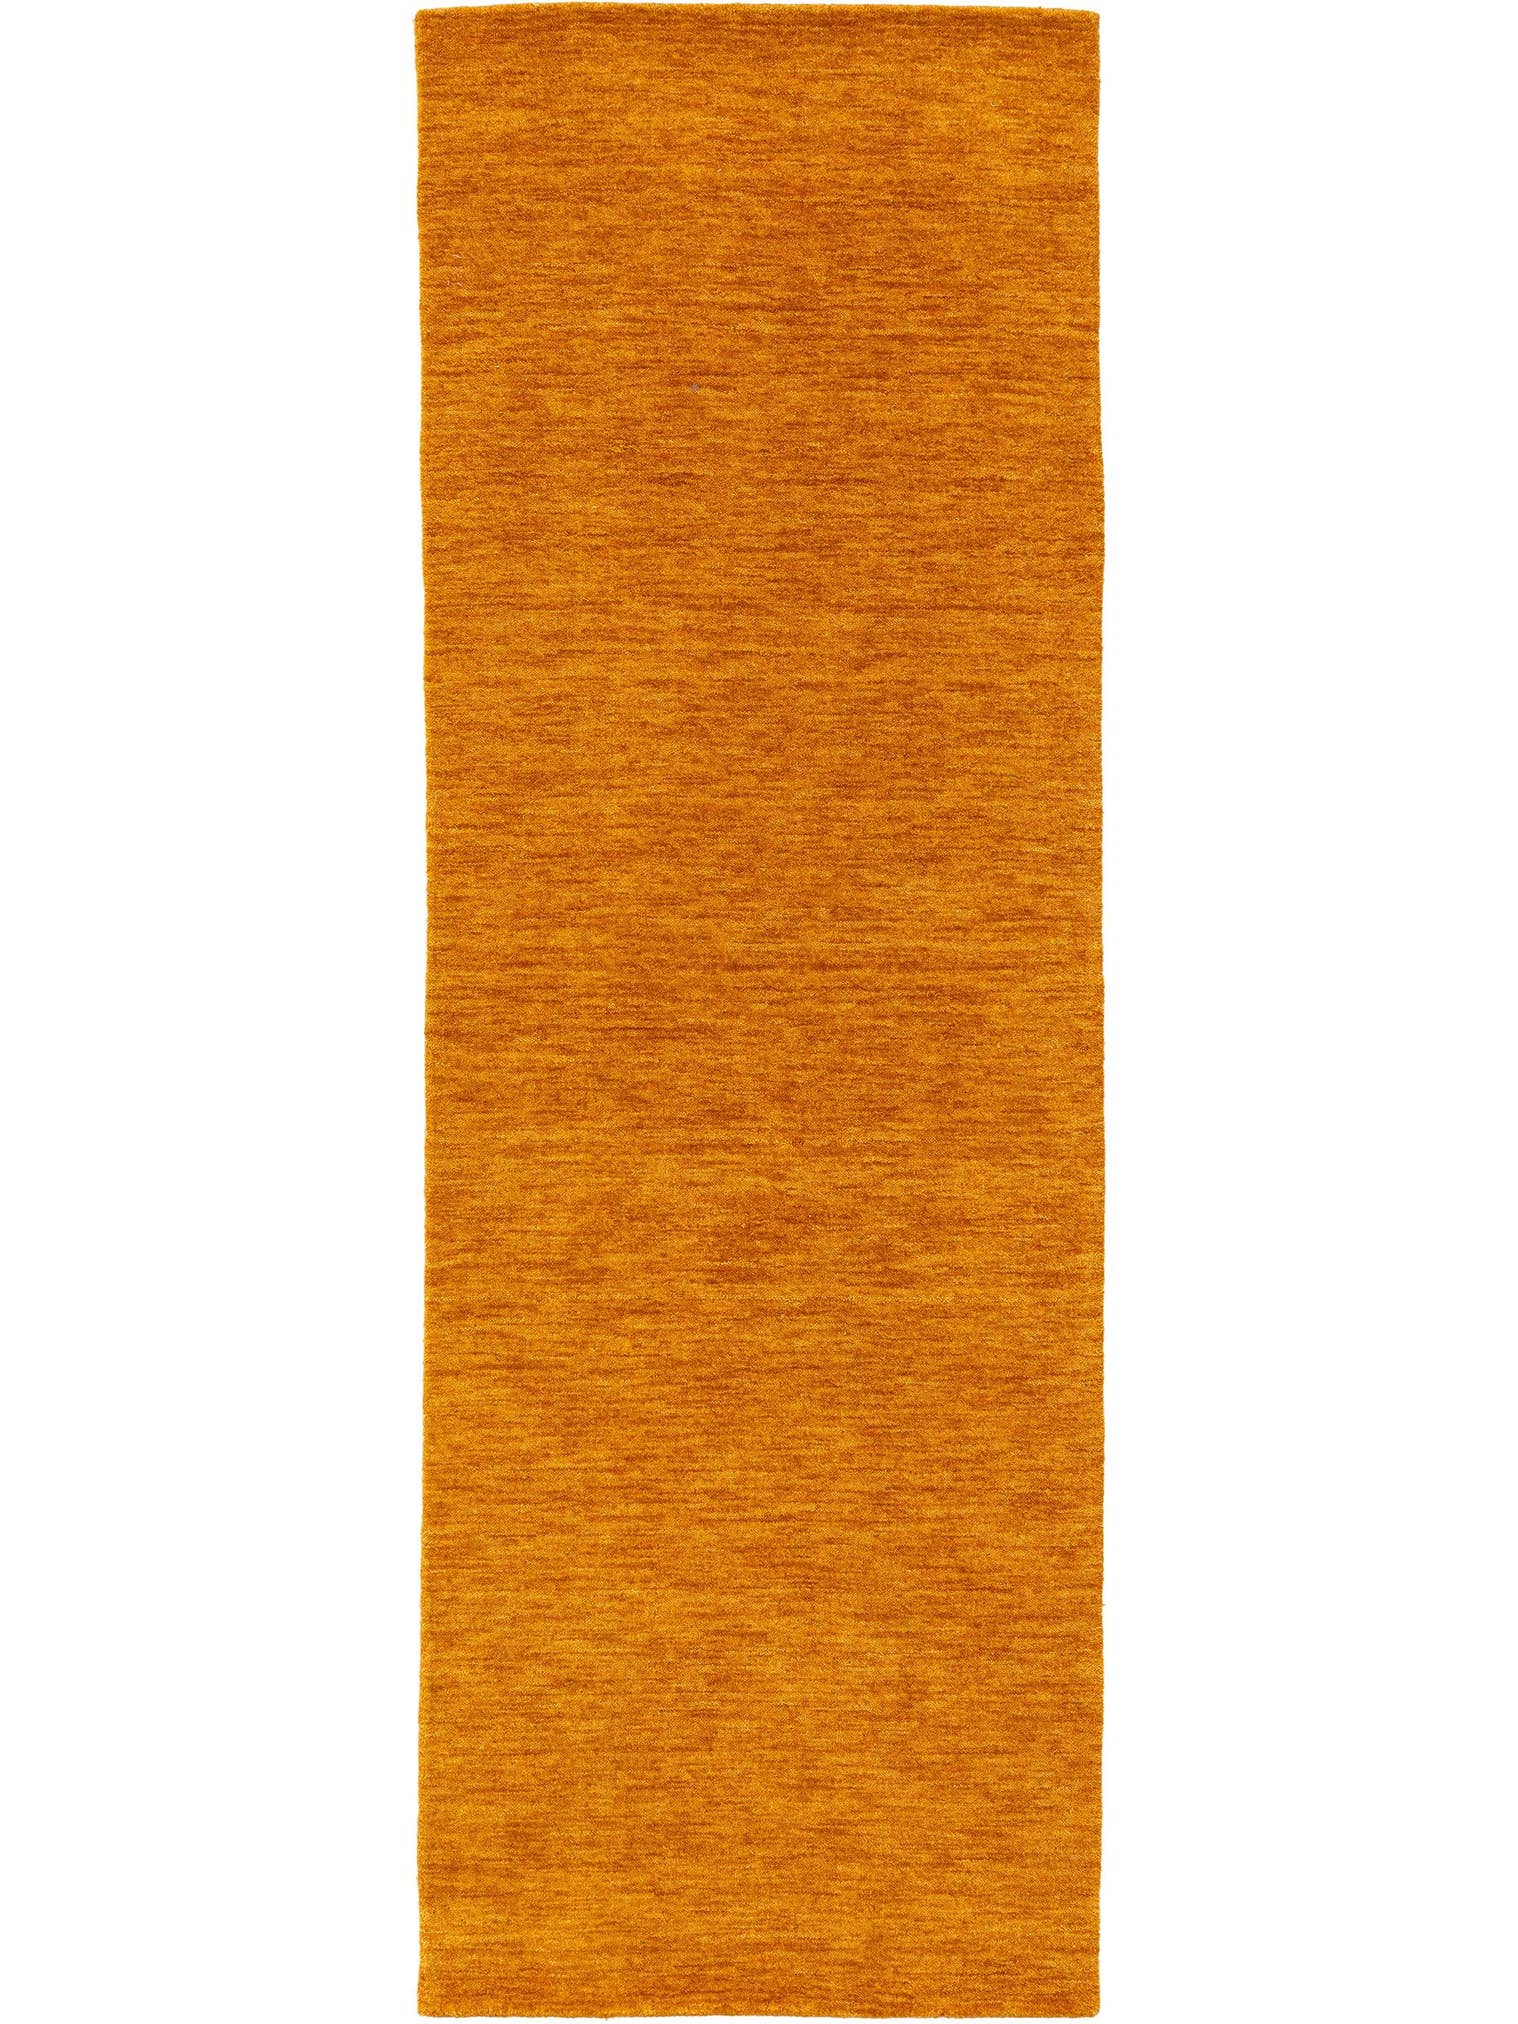 Teppich aus 100% Wolle in Gelb mit 6 bis 10 mm hohem Flor von benuta Nest